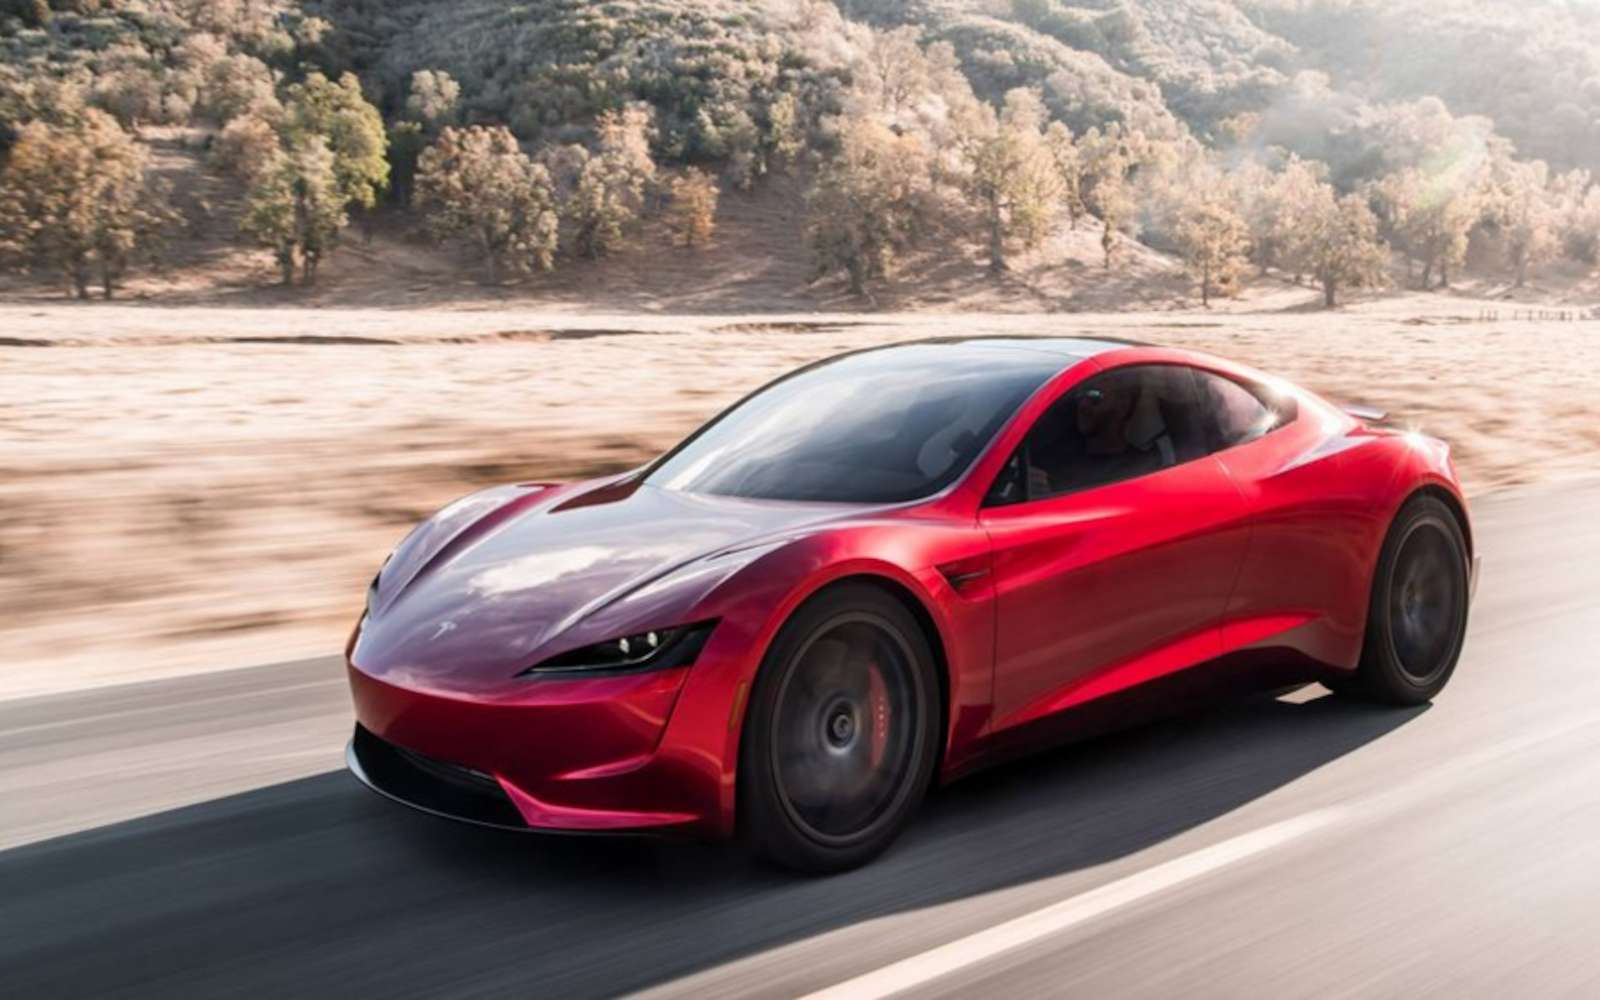 Elon Musk : « il n'y aura jamais une autre voiture comme celle-ci, si on peut appeler cela une voiture »